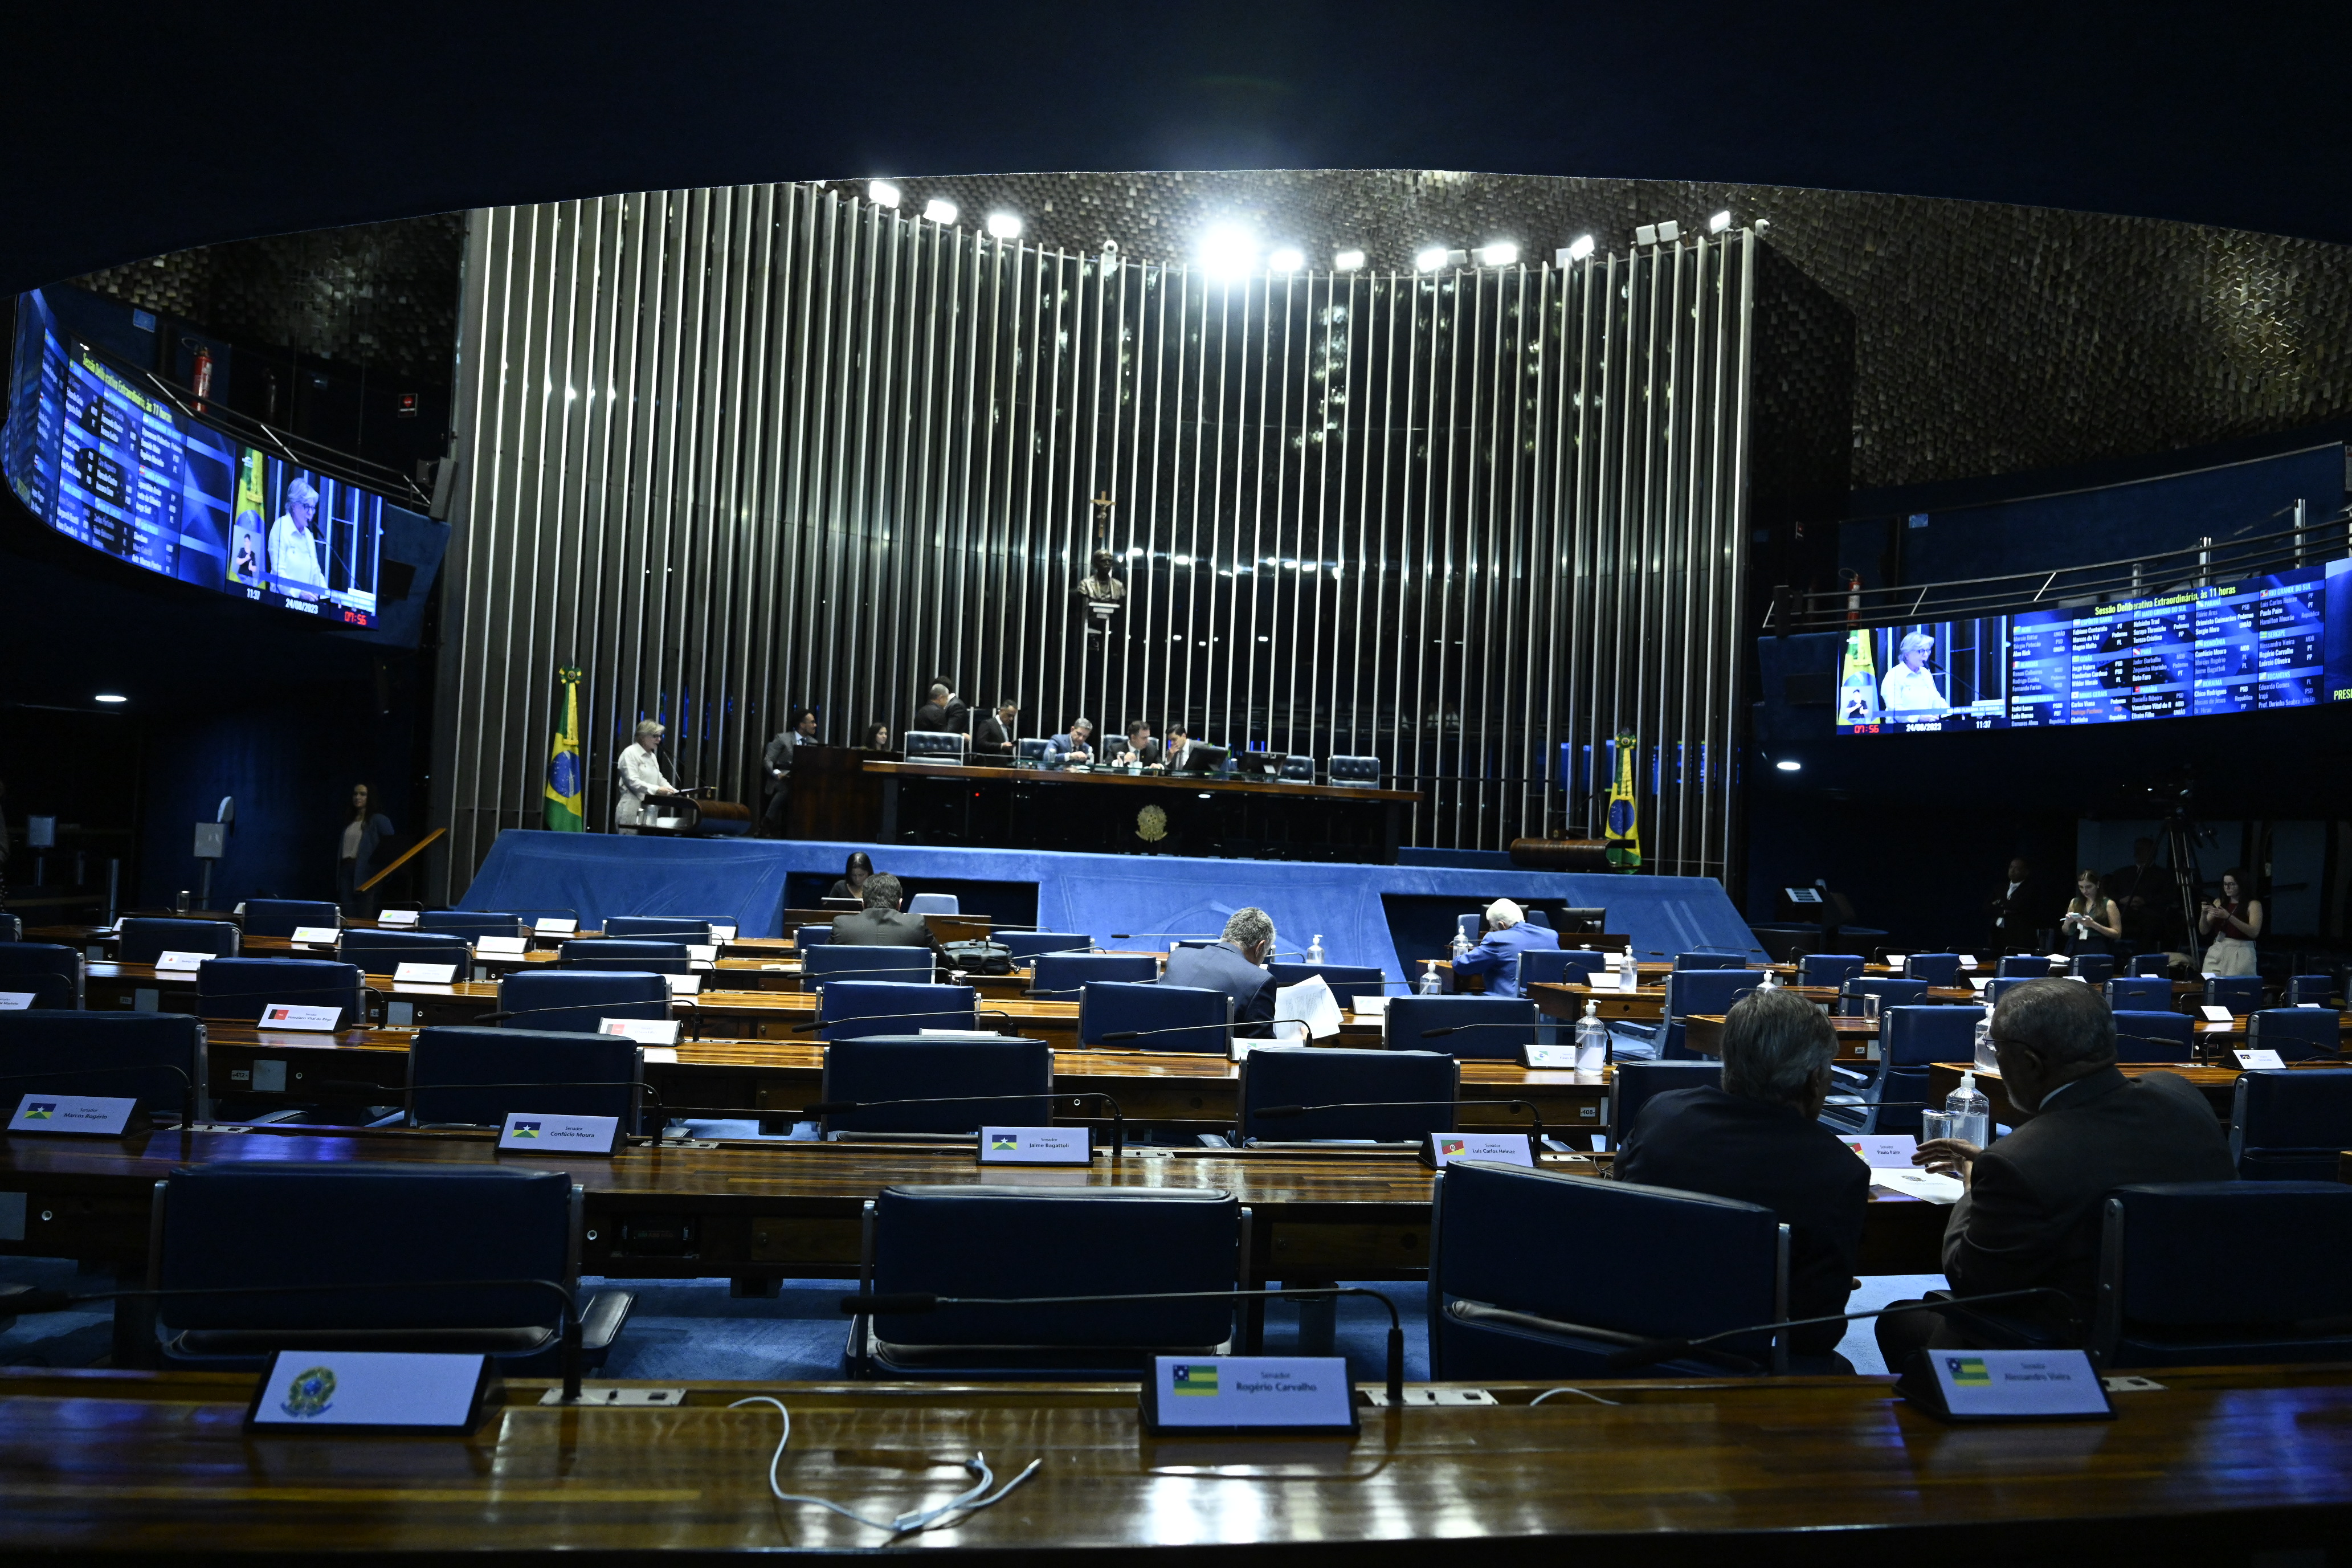 Bancada:
senador Jaques Wagner (PT-BA); 
senador Eduardo Girão (Novo-CE); 
senador Marcos do Val (Podemos-ES).